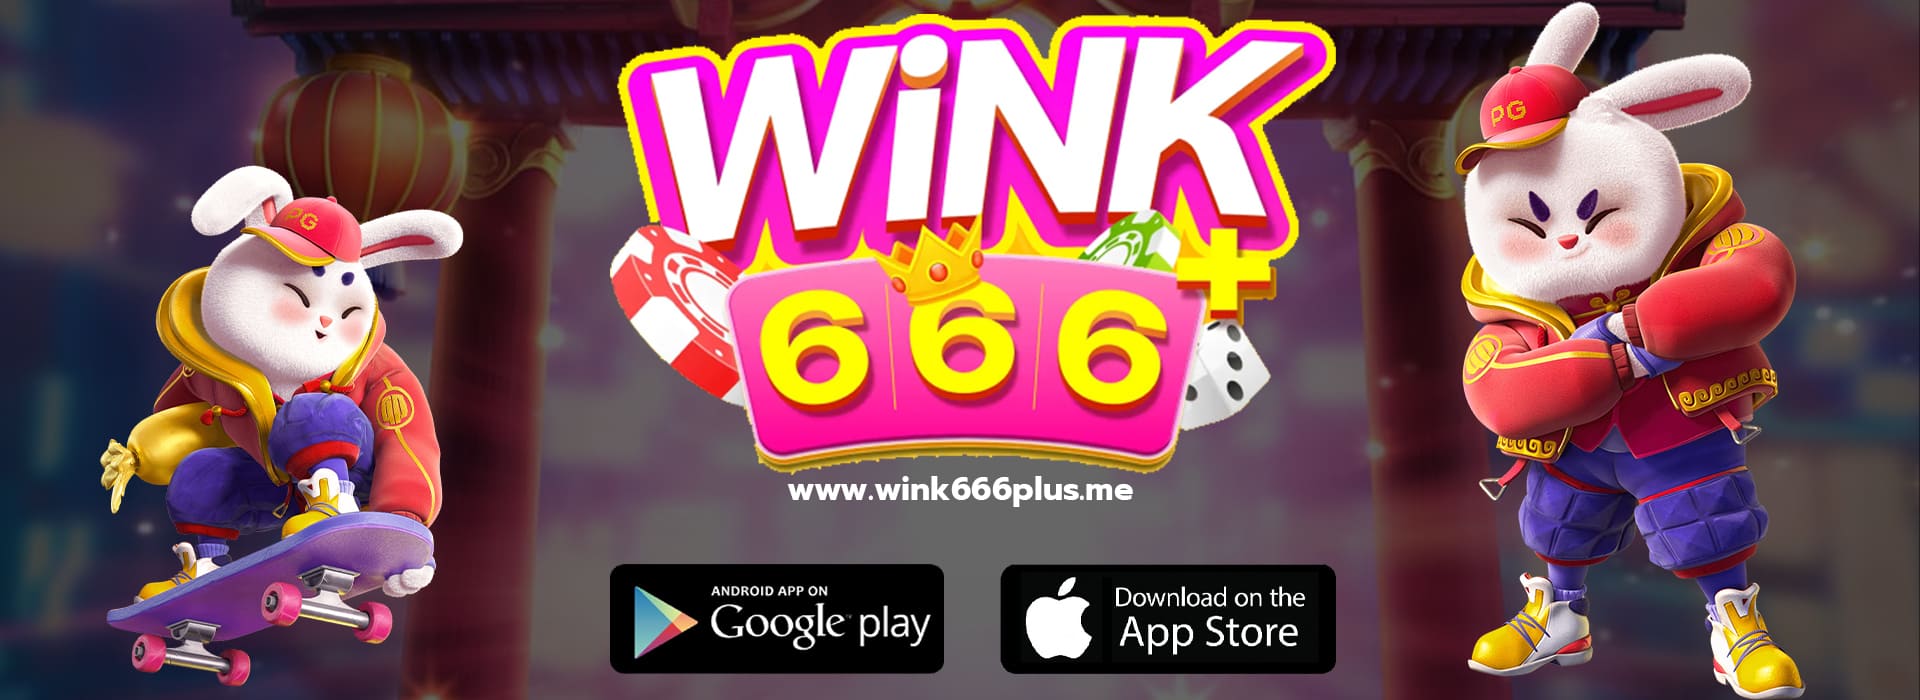 wink666plus สมัคร